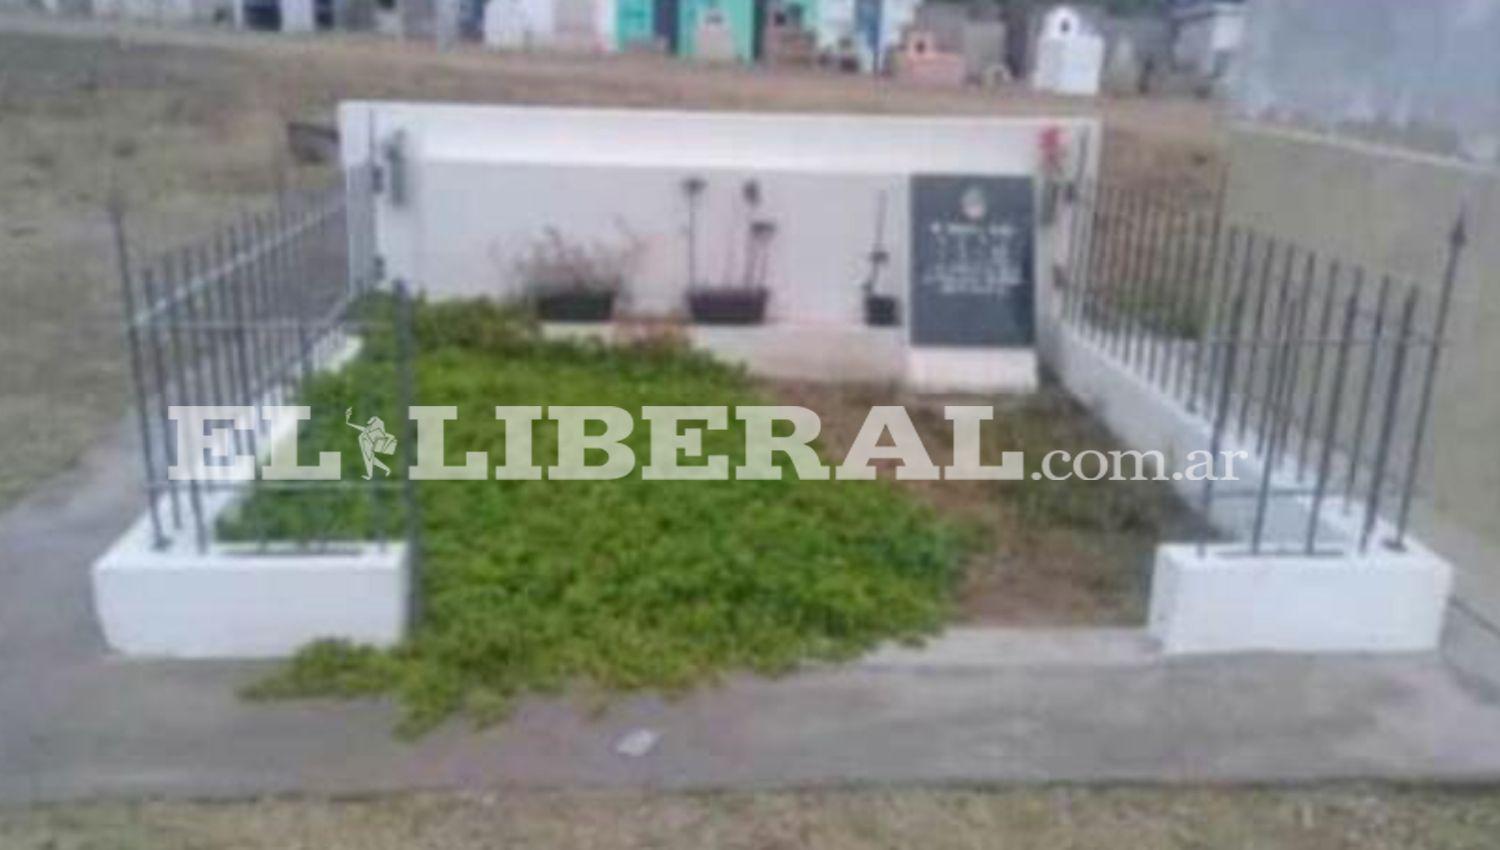 Cementerio de Sumampa- Robaron el portoacuten del nicho del Dr Ignacio Acuntildea